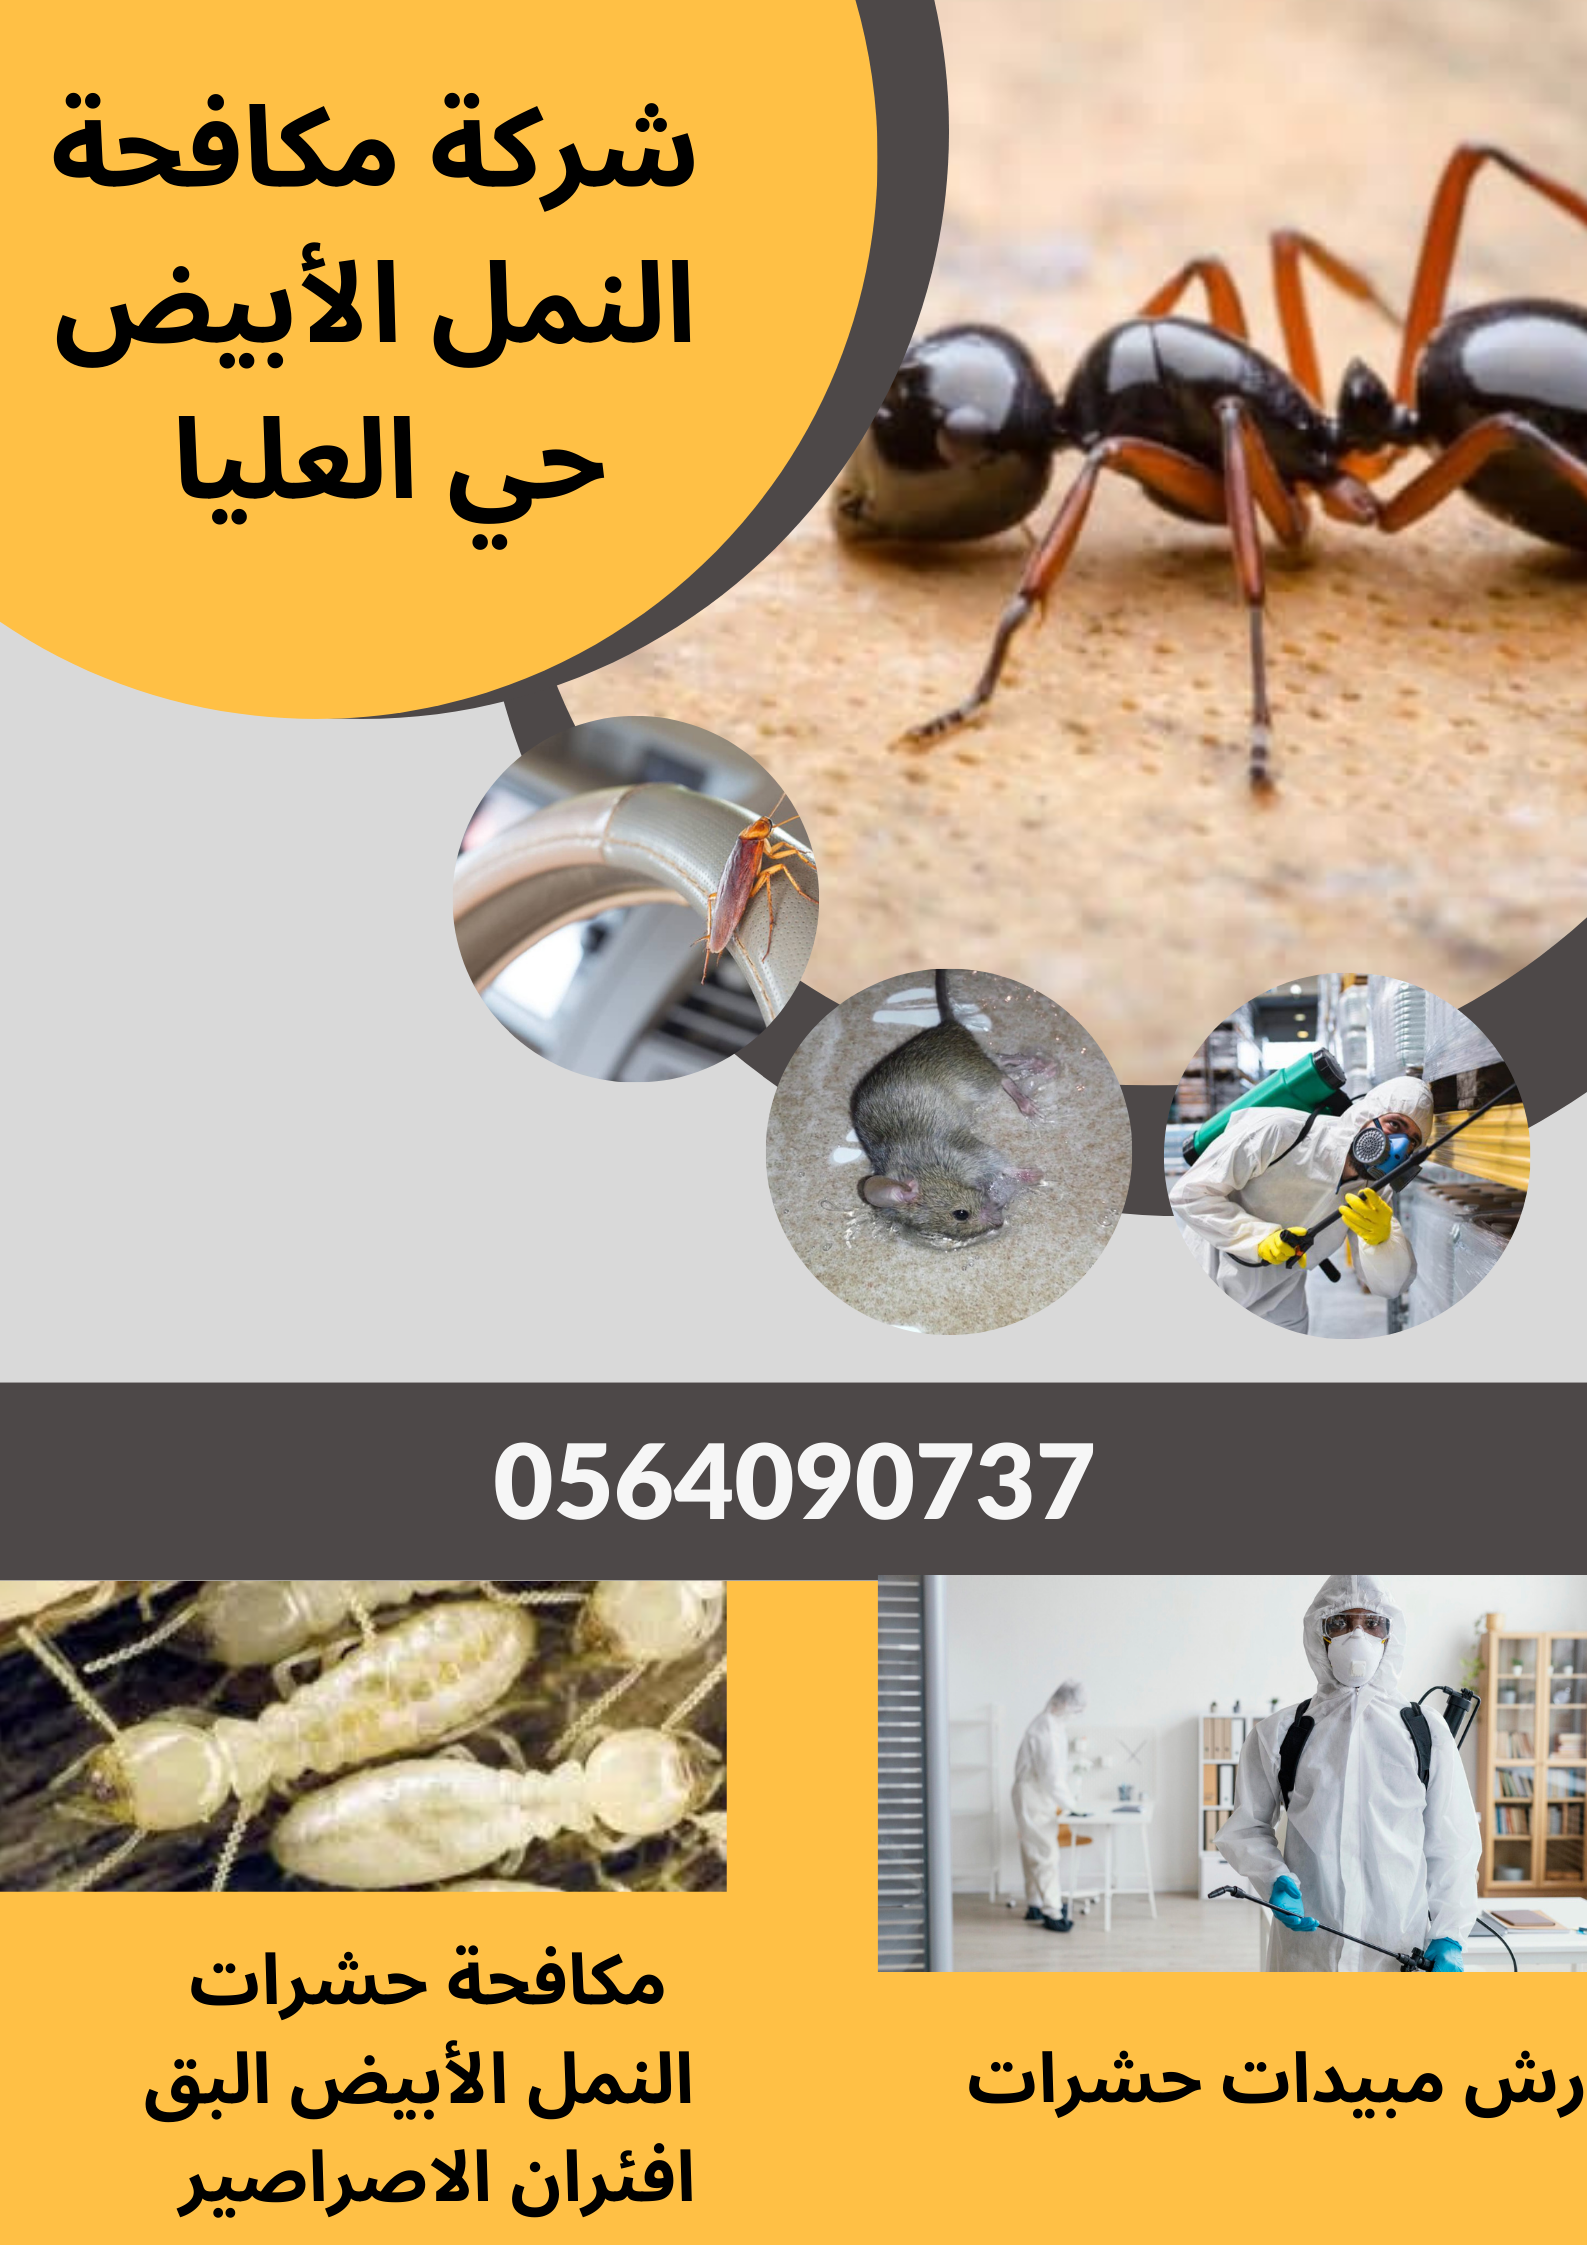 شركة مكافحة حشرات بحي العليا الرياض 